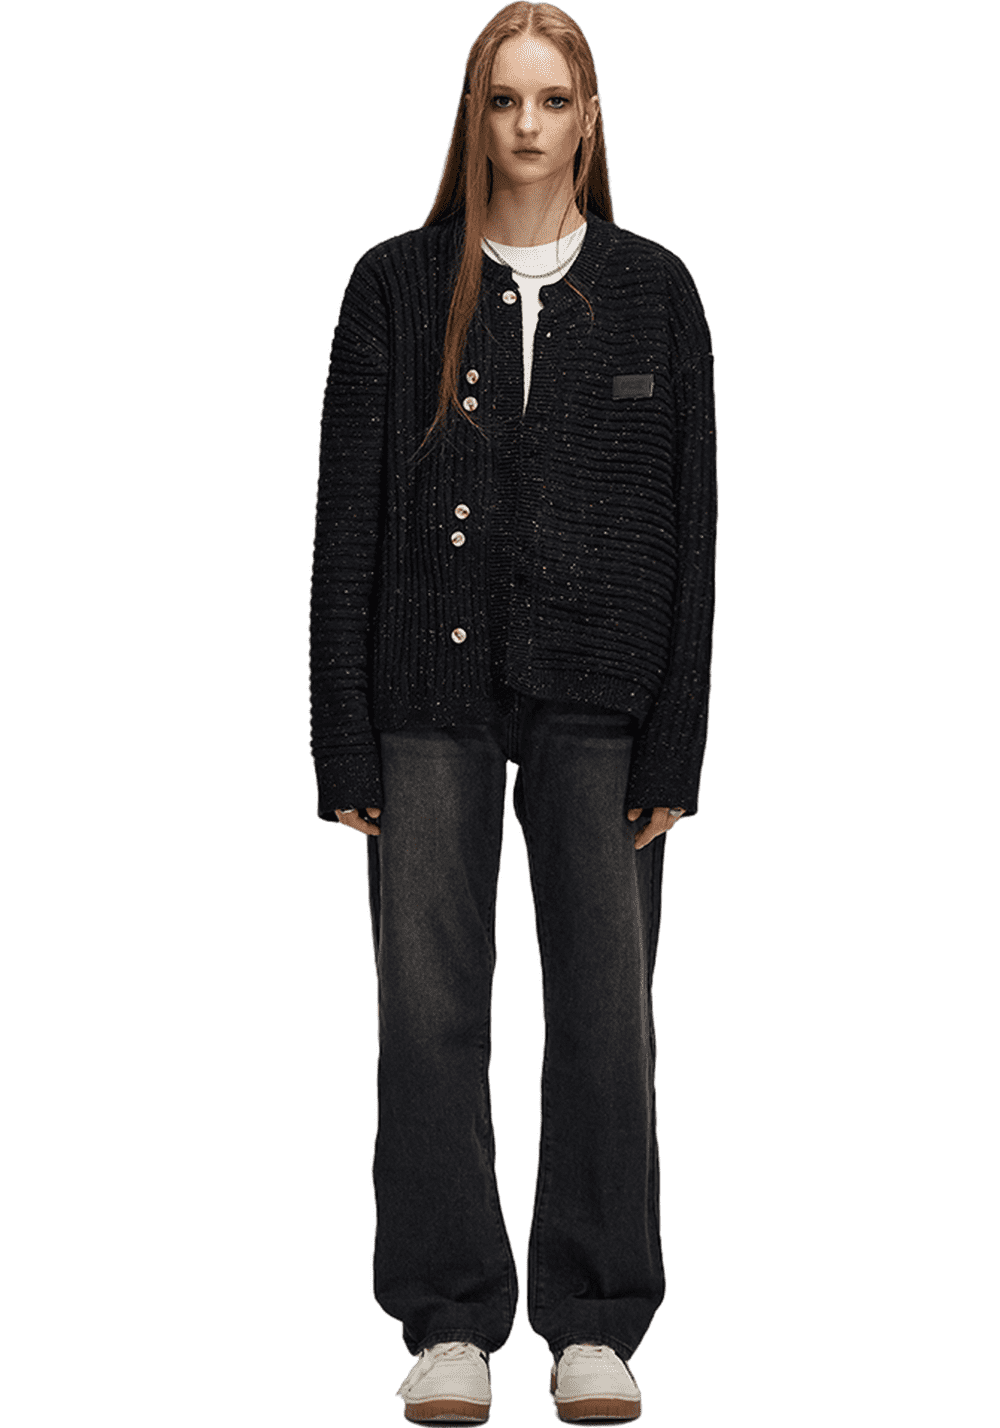 Asymmetric Wool Textured Knitted Jacket - PSYLOS 1, Asymmetric Wool Textured Knitted Jacket, Sweater, iconslab, PSYLOS 1